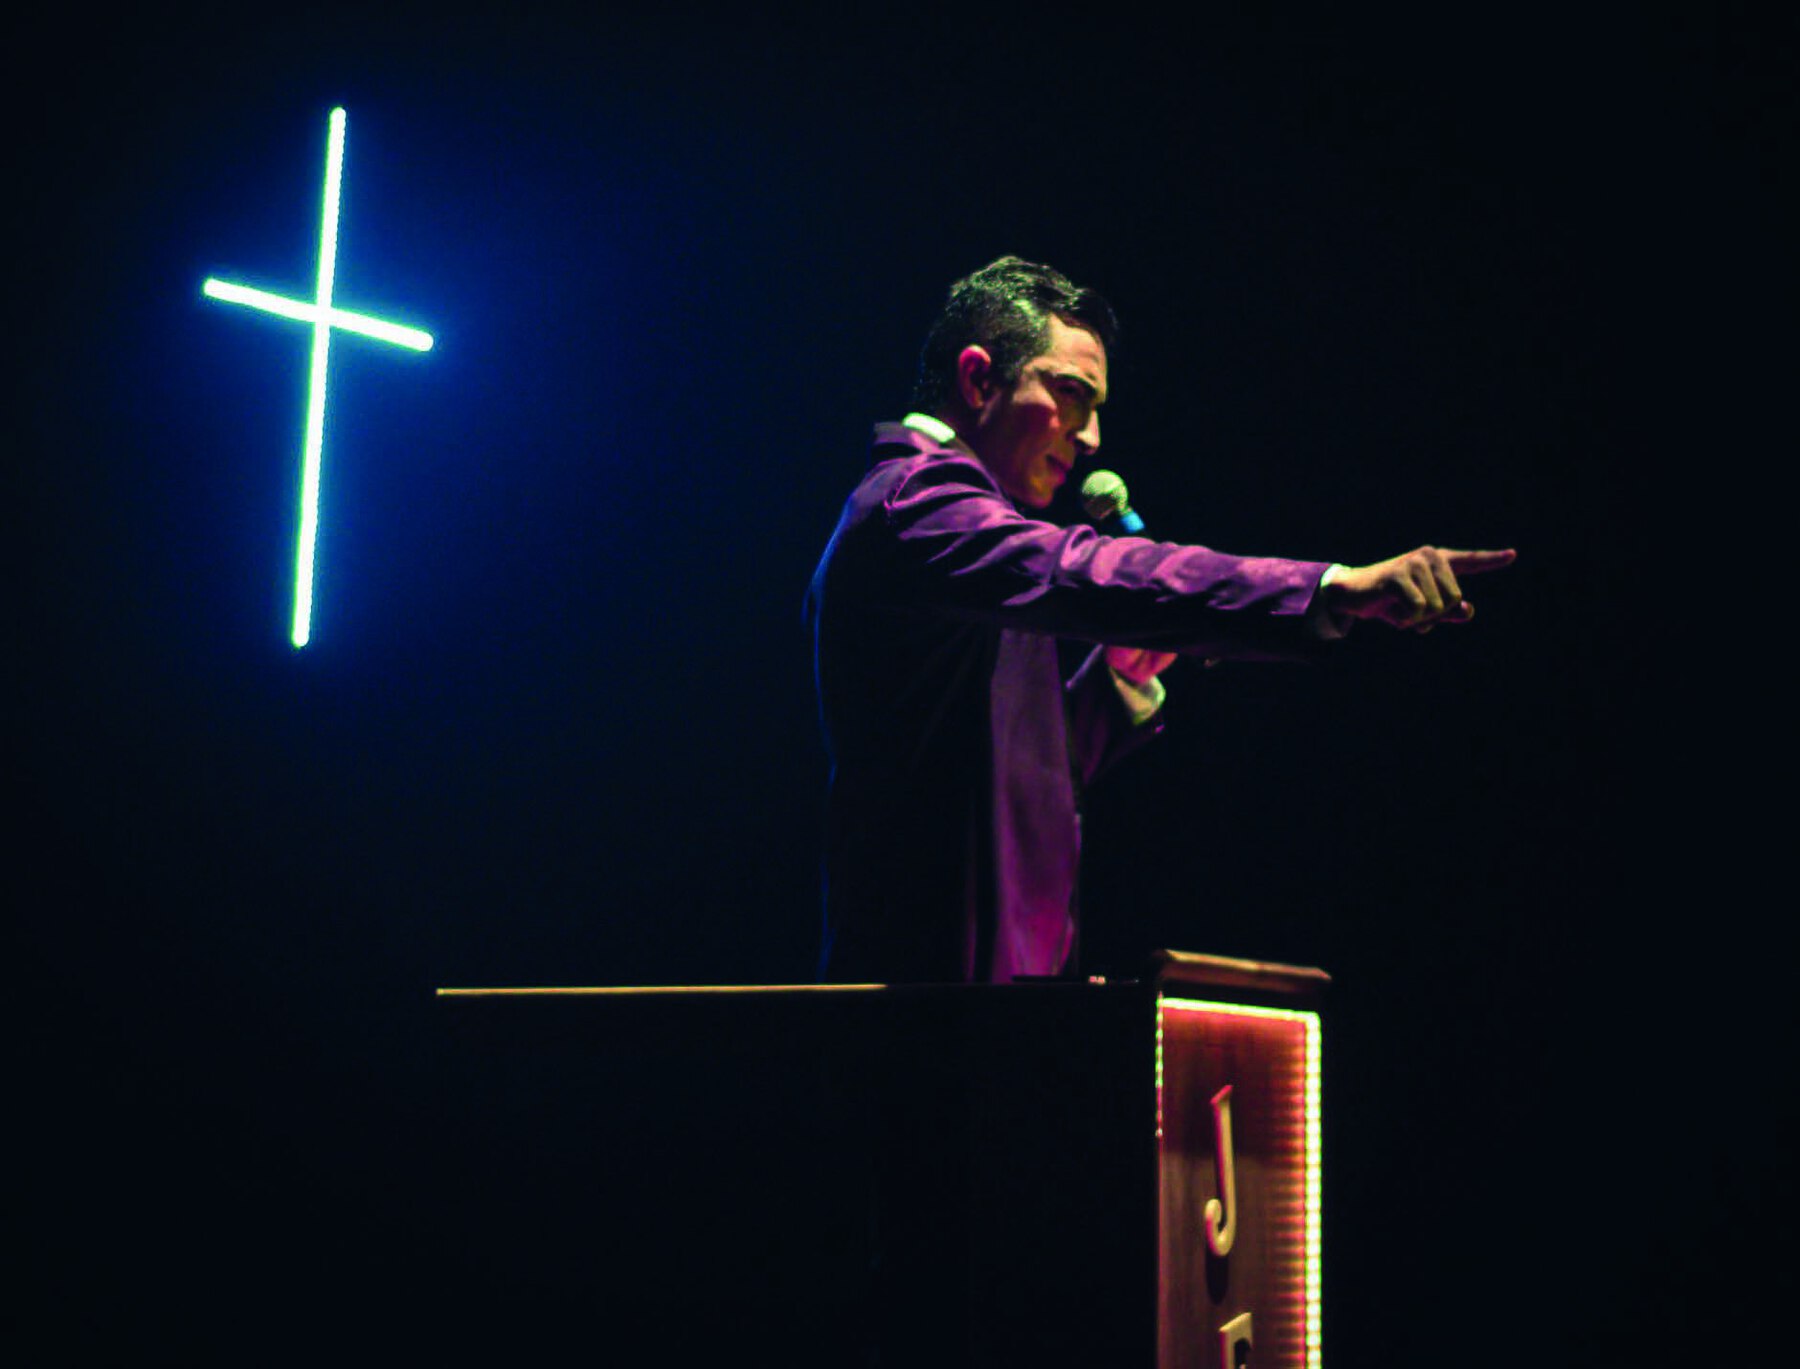 Fotografia. Um homem de cabelos pretos curtos e vestindo um  casaco roxo segura um microfone, enquanto aponta com o indicador direito para a frente, posicionado sobre um palanque. Atrás dele,  sobre fundo escuro,  há uma cruz iluminada.